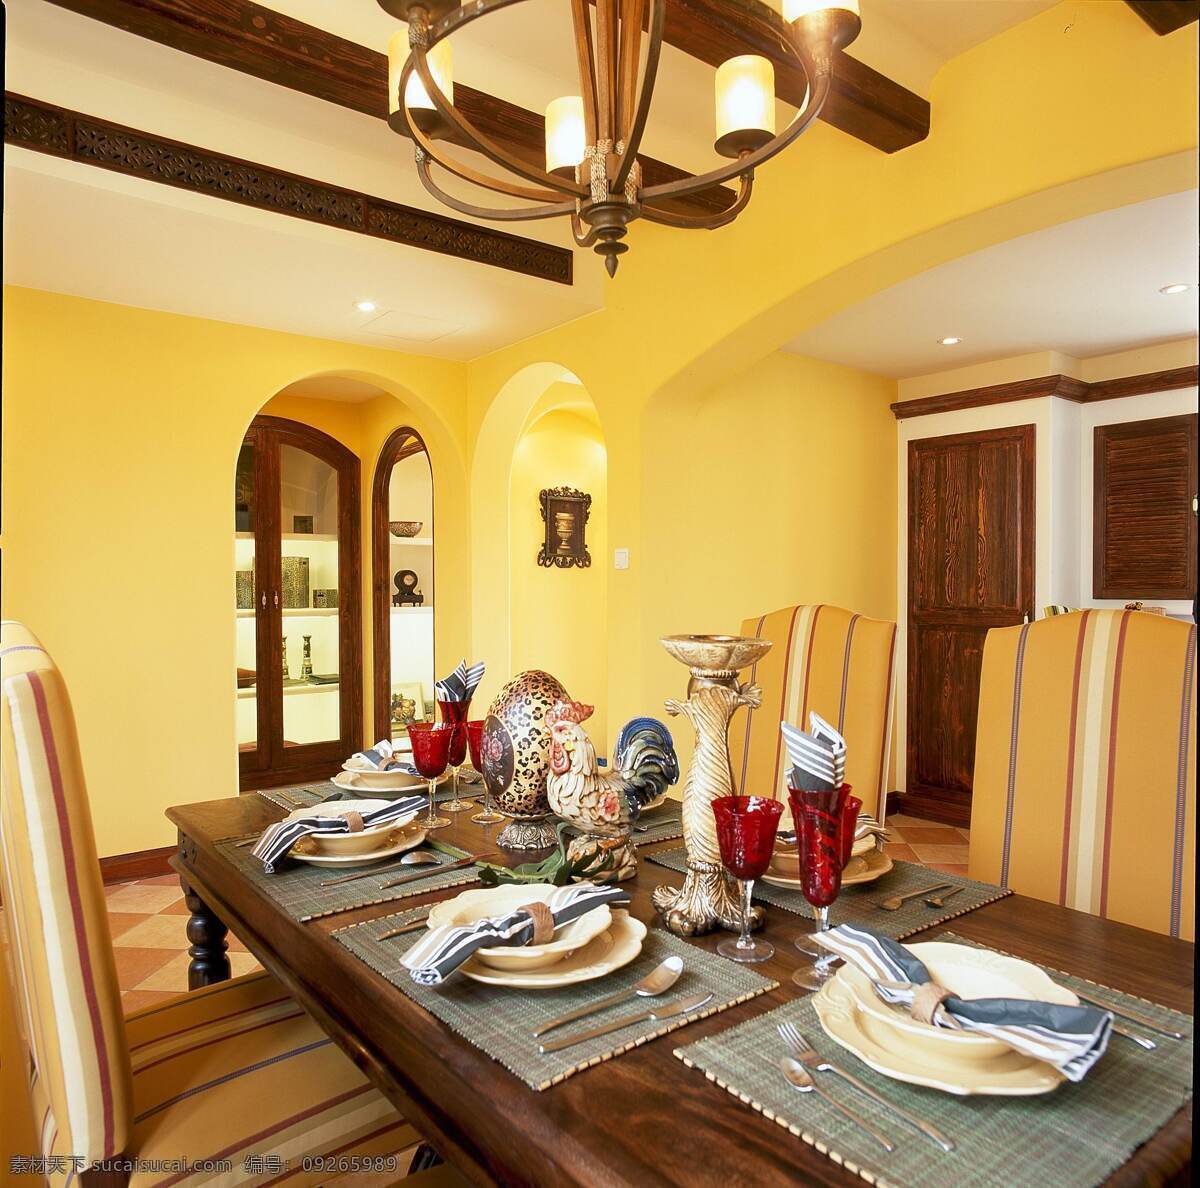 田园 地中海 餐厅 个性 吊灯 装修 效果图 浅黄色墙壁 长方形 木质 餐桌 桌椅 拱形门